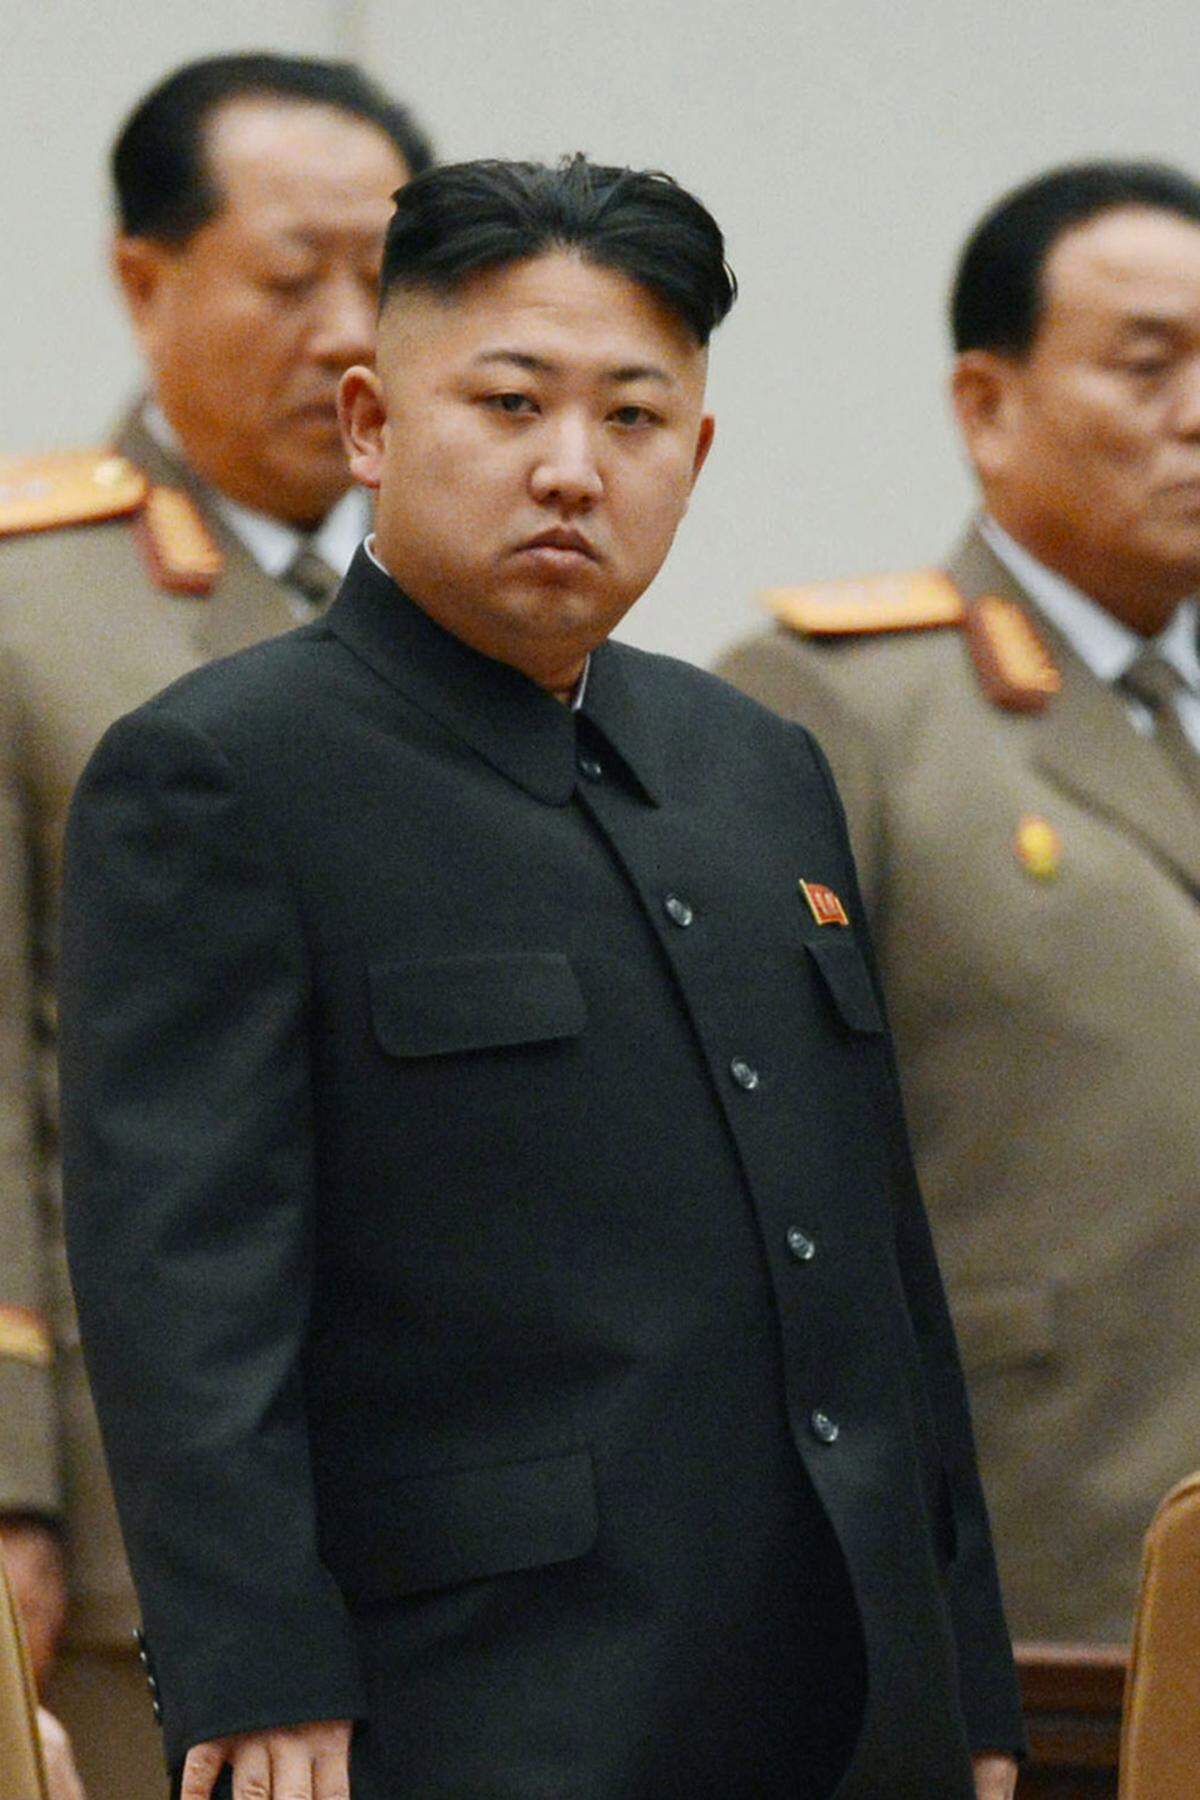 "Erbärmliche, dilettantische Berichterstattung"; "widerlicher, krimineller Akt": Nordkoreas Nachrichtenagentur KCNA schäumt über Berichte aus dem Nachbarland. Mehrere südkoreanische Medien meldeten zuletzt, Nordkoreas Diktator Kim Jong-un habe sich Schönheitsoperationen unterzogen, um seinem Großvater Kim Il-sung zu ähneln. Sechs Mal soll er sich unters Messer gelegt haben. Für KCNA schlicht "unvorstellbar".